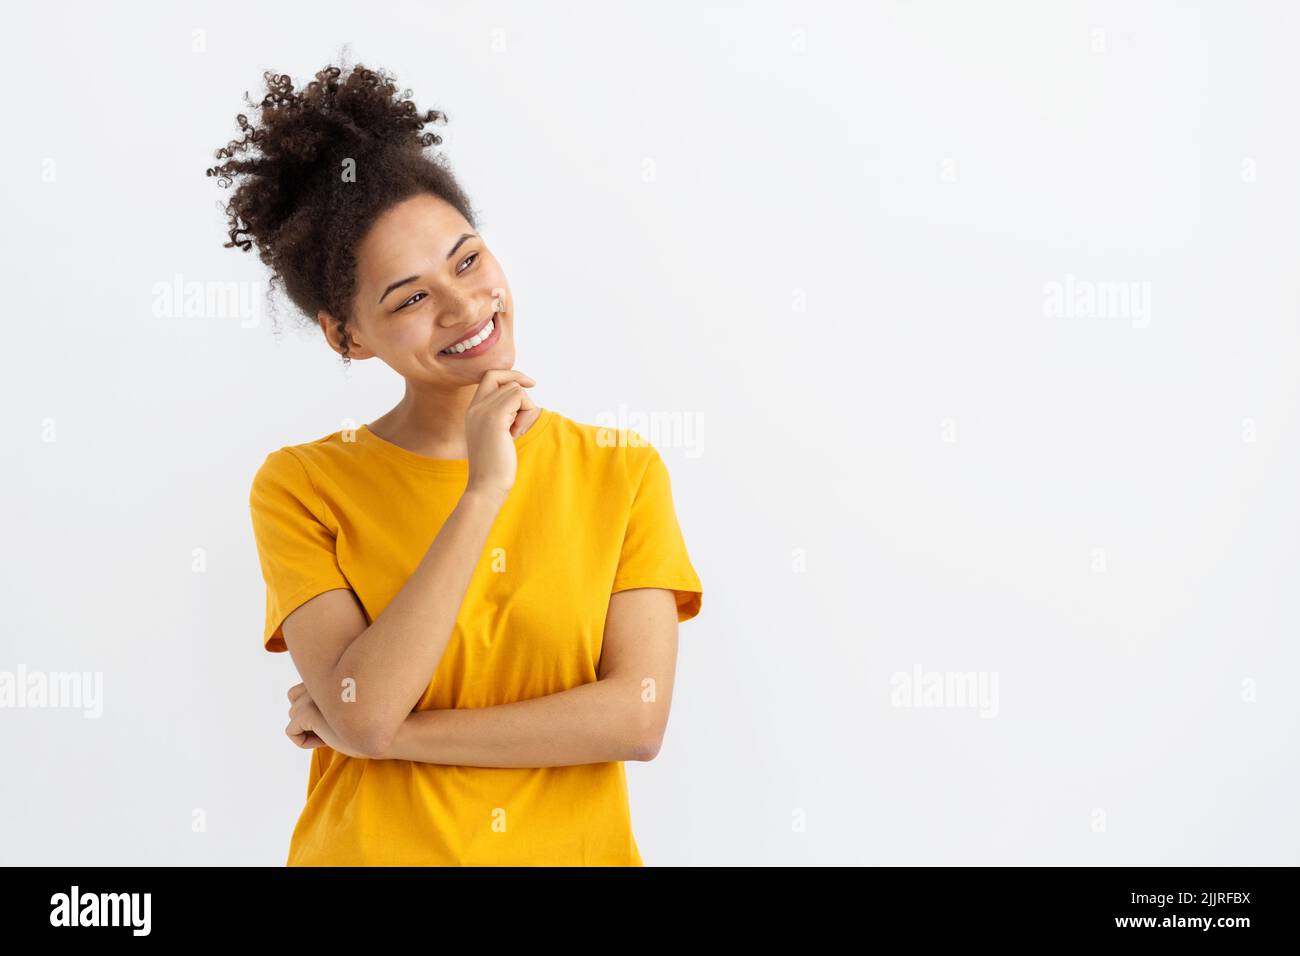 Porträt einer jungen Frau, die lächelt und auf einem weißen Hintergrund mit einem Kopierbereich wegschaut, lächelt freundlich Stockfoto